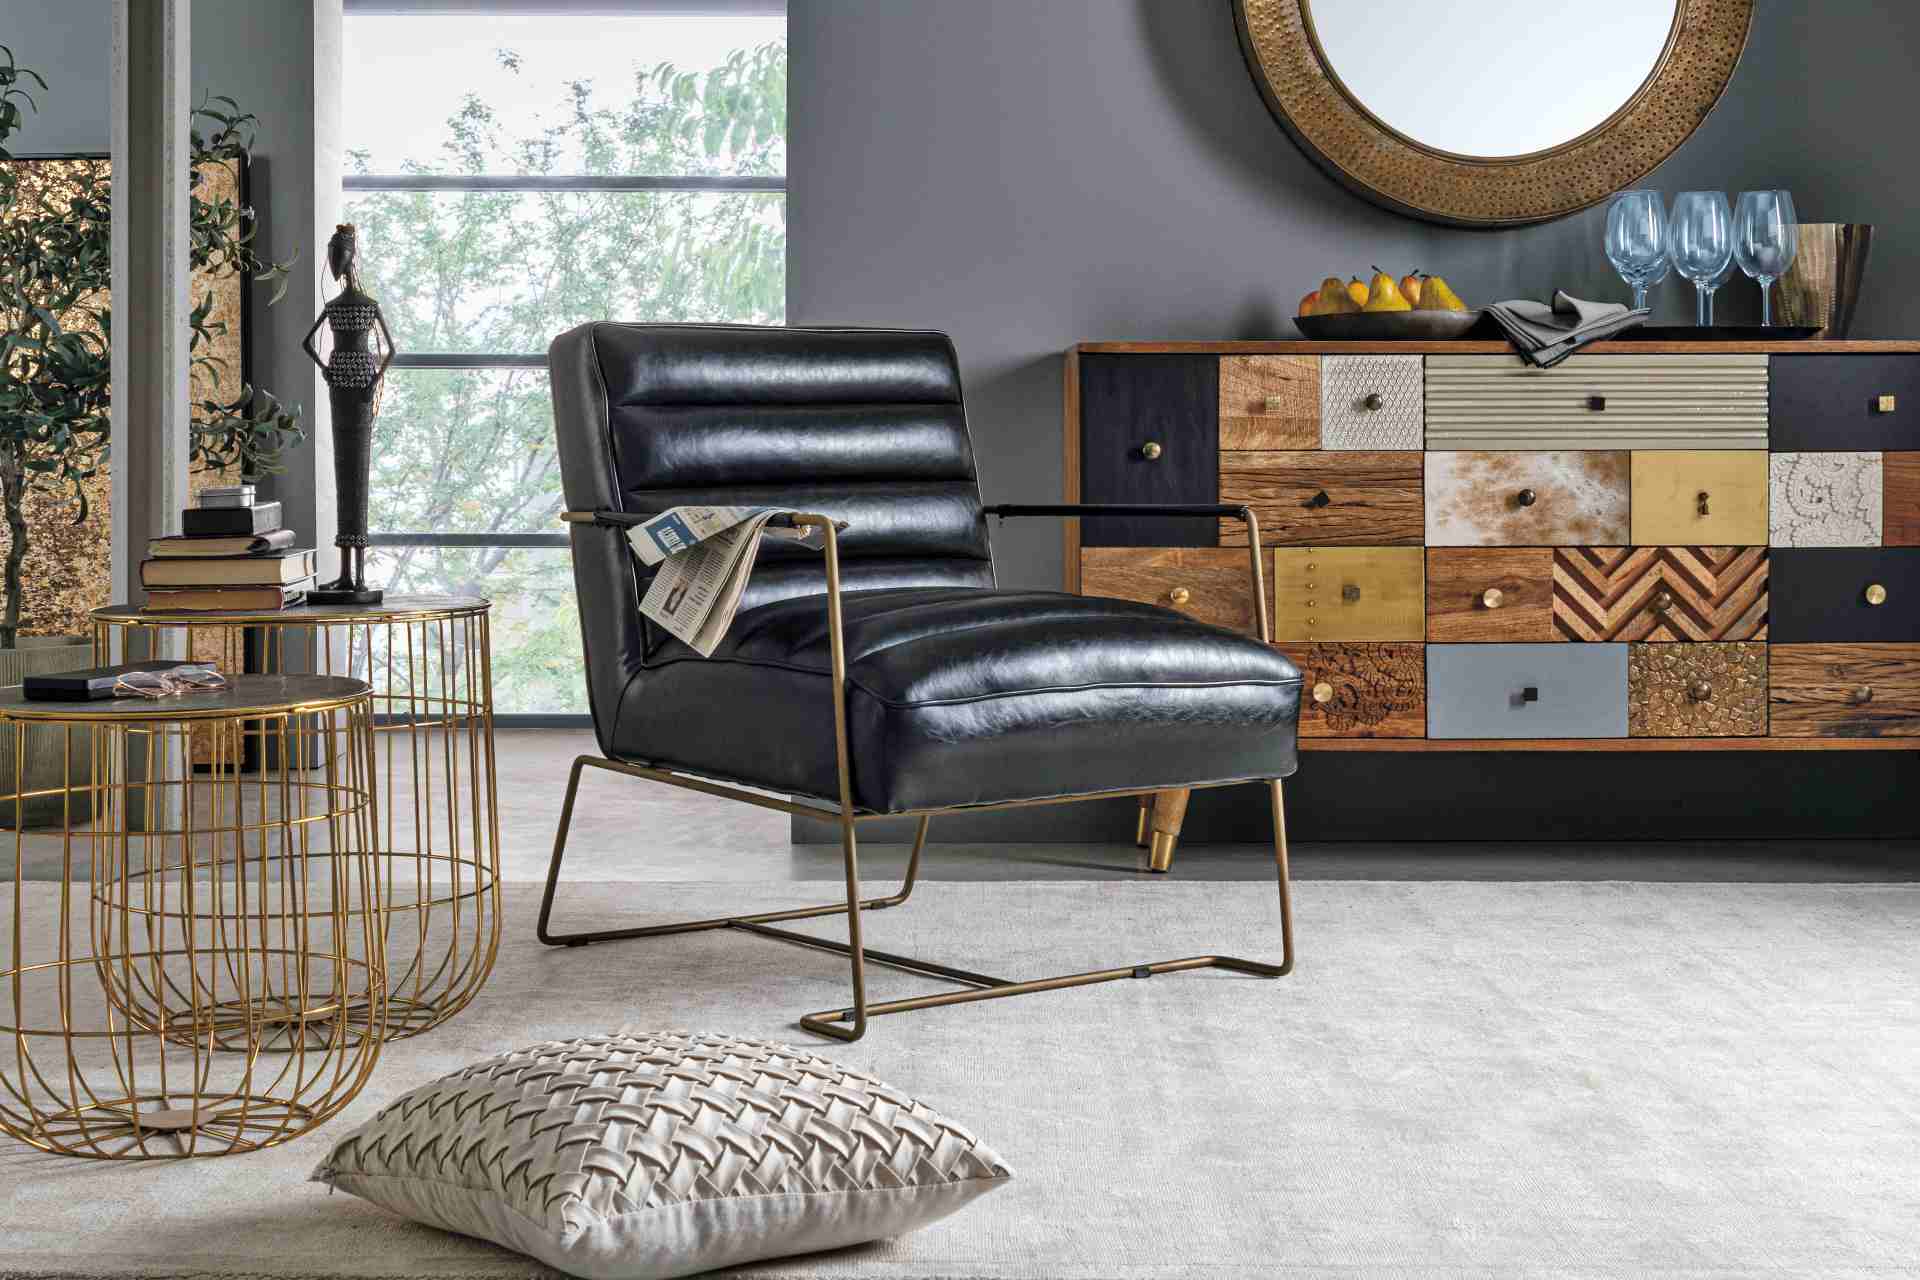 Der Sessel Brianna überzeugt mit seinem klassischen Design. Gefertigt wurde er aus Kunstleder, welches einen schwarzen Farbton besitzt. Das Gestell ist aus Metall und hat eine goldene Farbe. Der Sessel besitzt eine Sitzhöhe von 45 cm. Die Breite beträgt 6